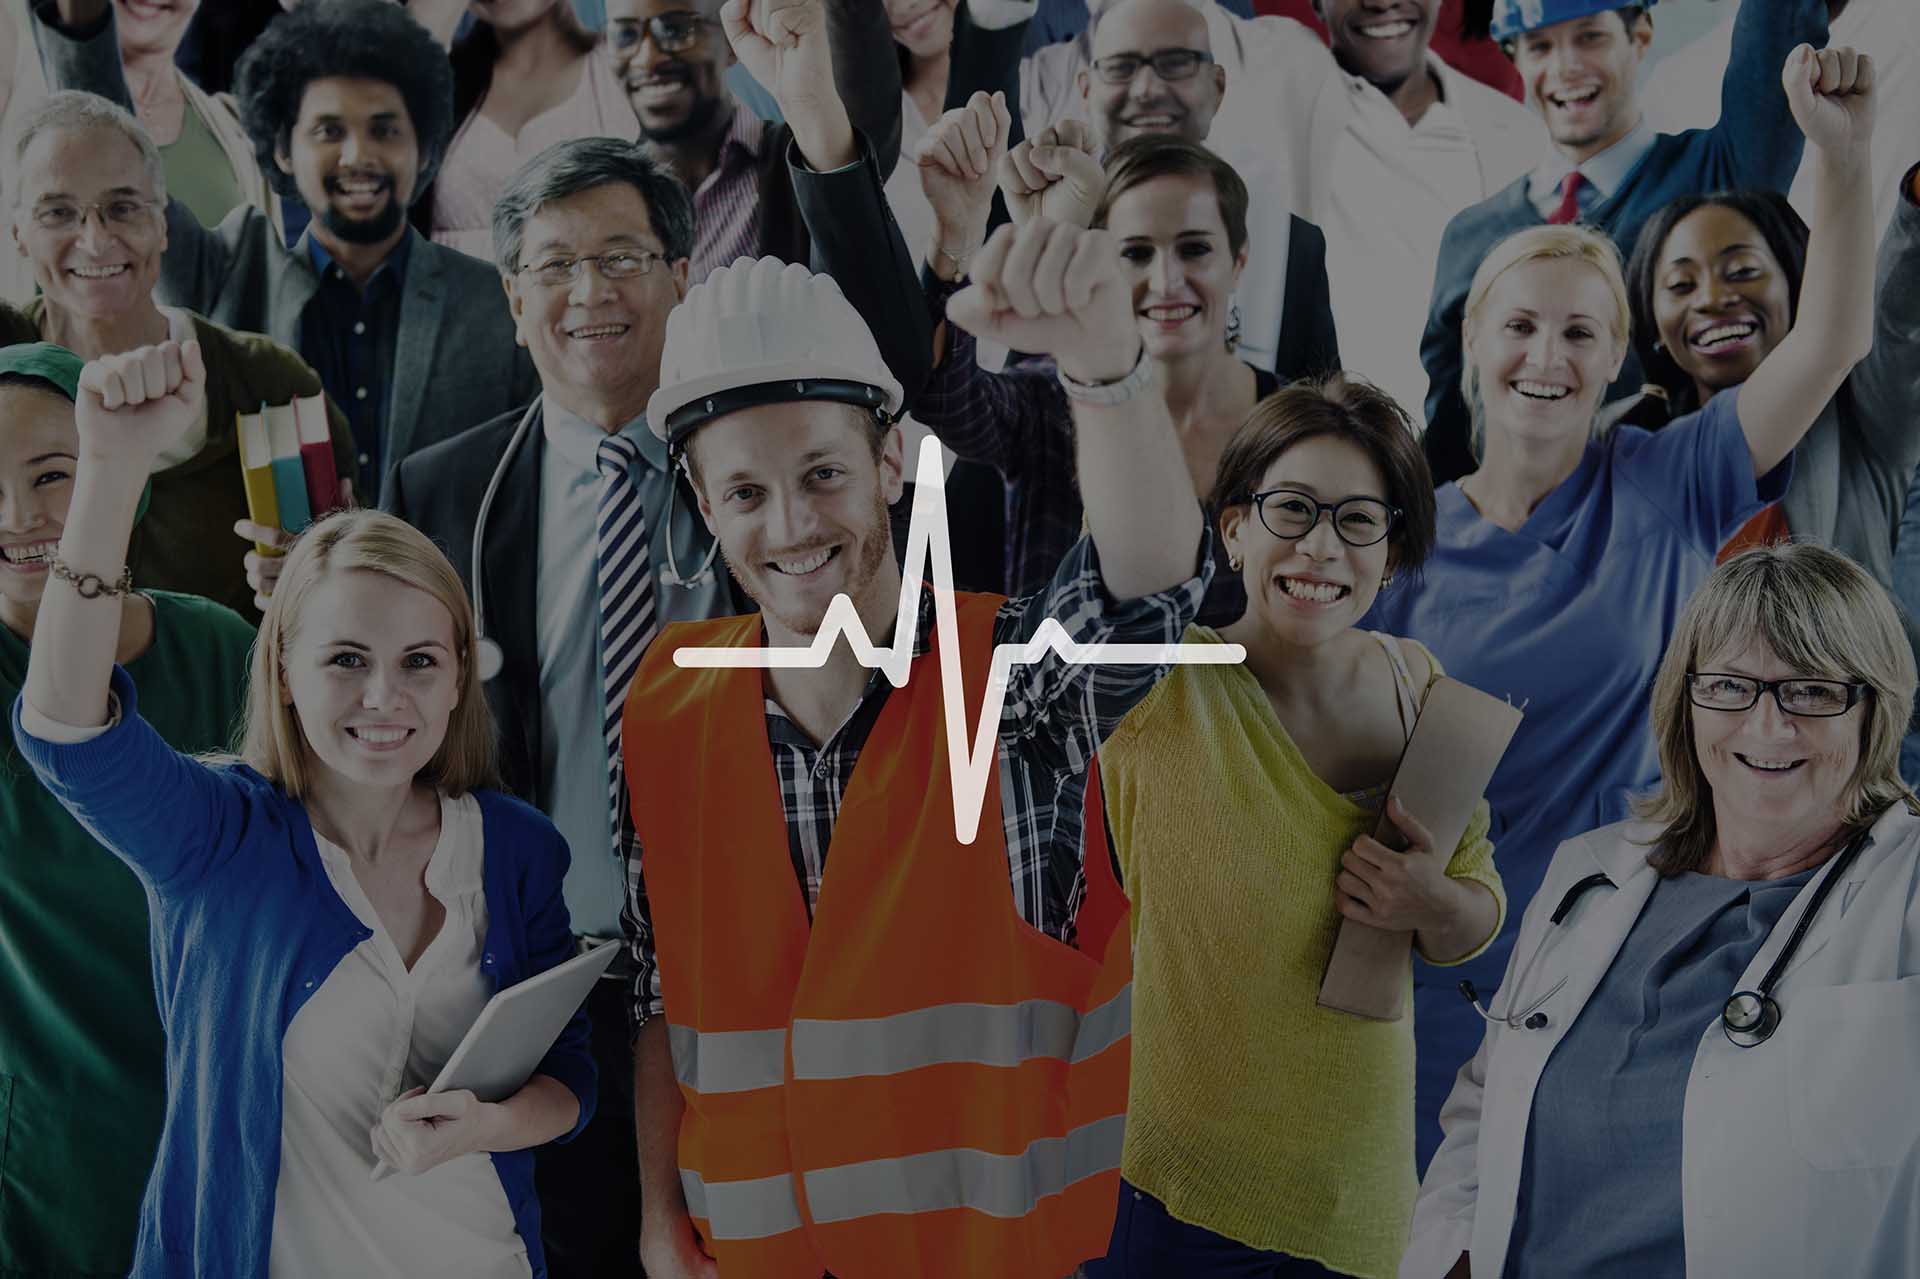 La medicina del lavoro è fondamentale nelle aziende per garantire la salute e la sicurezza dei lavoratori.